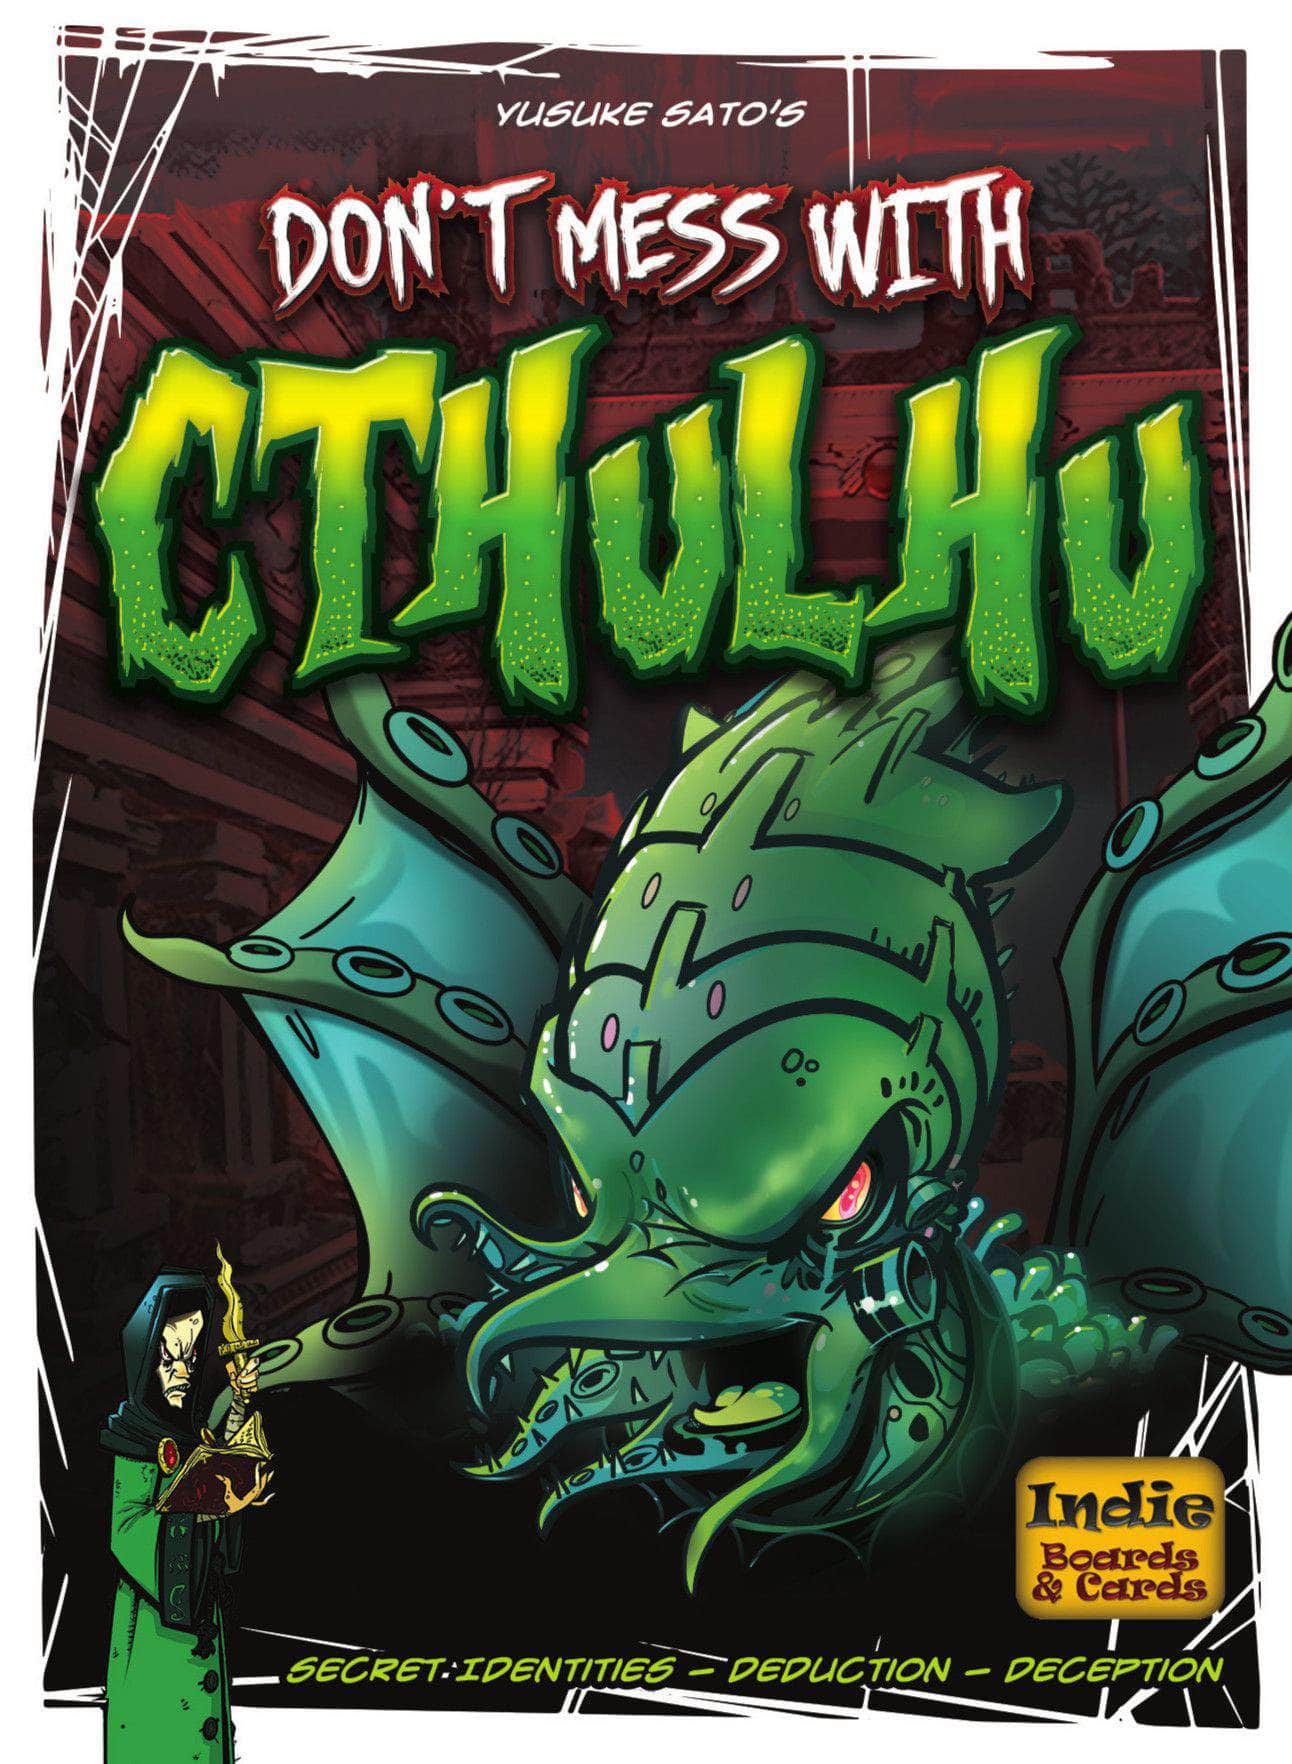 Leg dich nicht mit Cthulhu (Kickstarter Special) Kickstarter Brettspiel an Indie Boards & Cards KS800621a